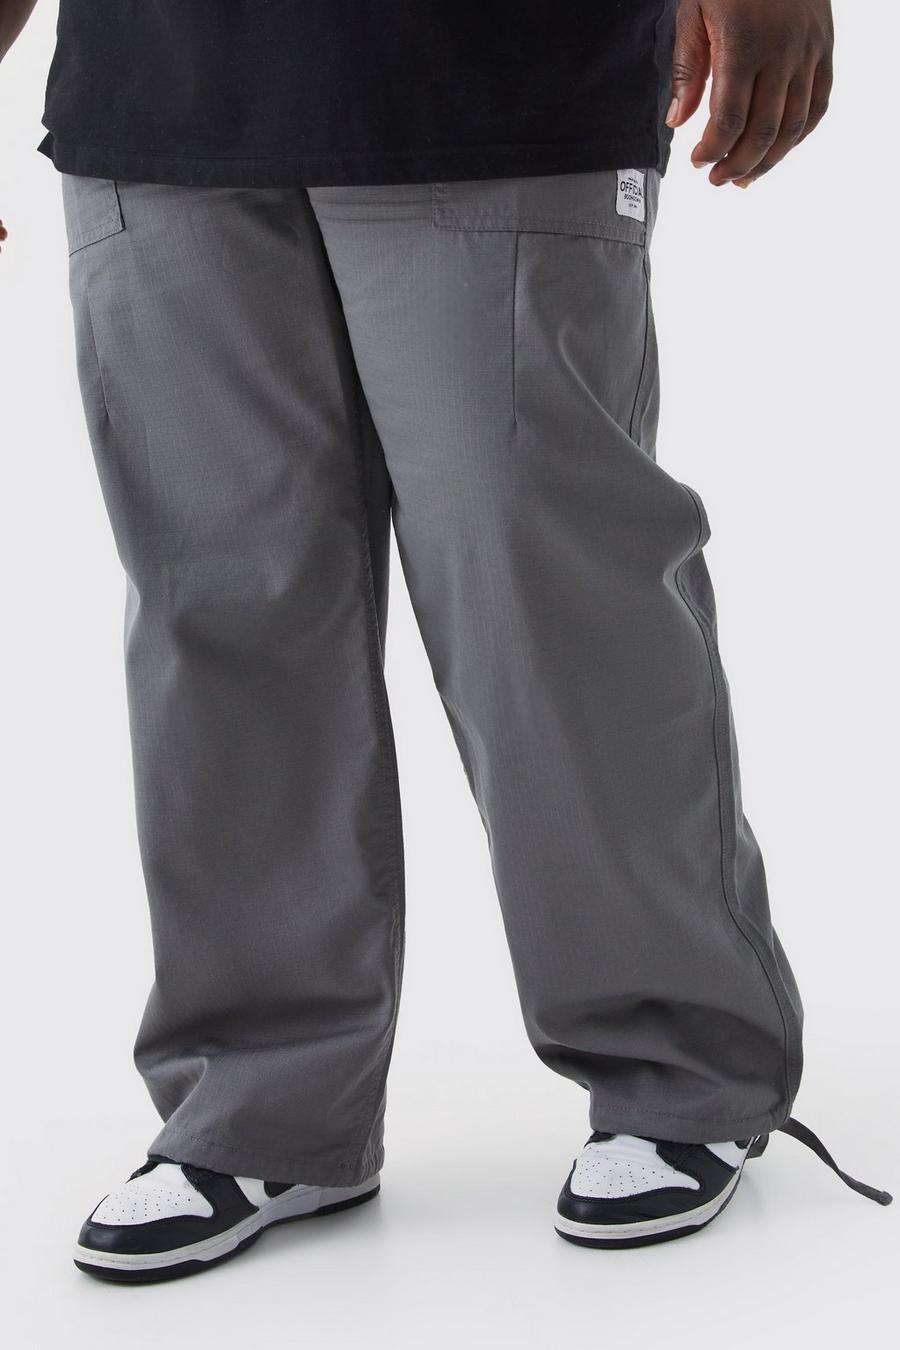 Pantaloni lunghi Plus Size rilassati in nylon ripstop elasticizzato con etichetta, Charcoal